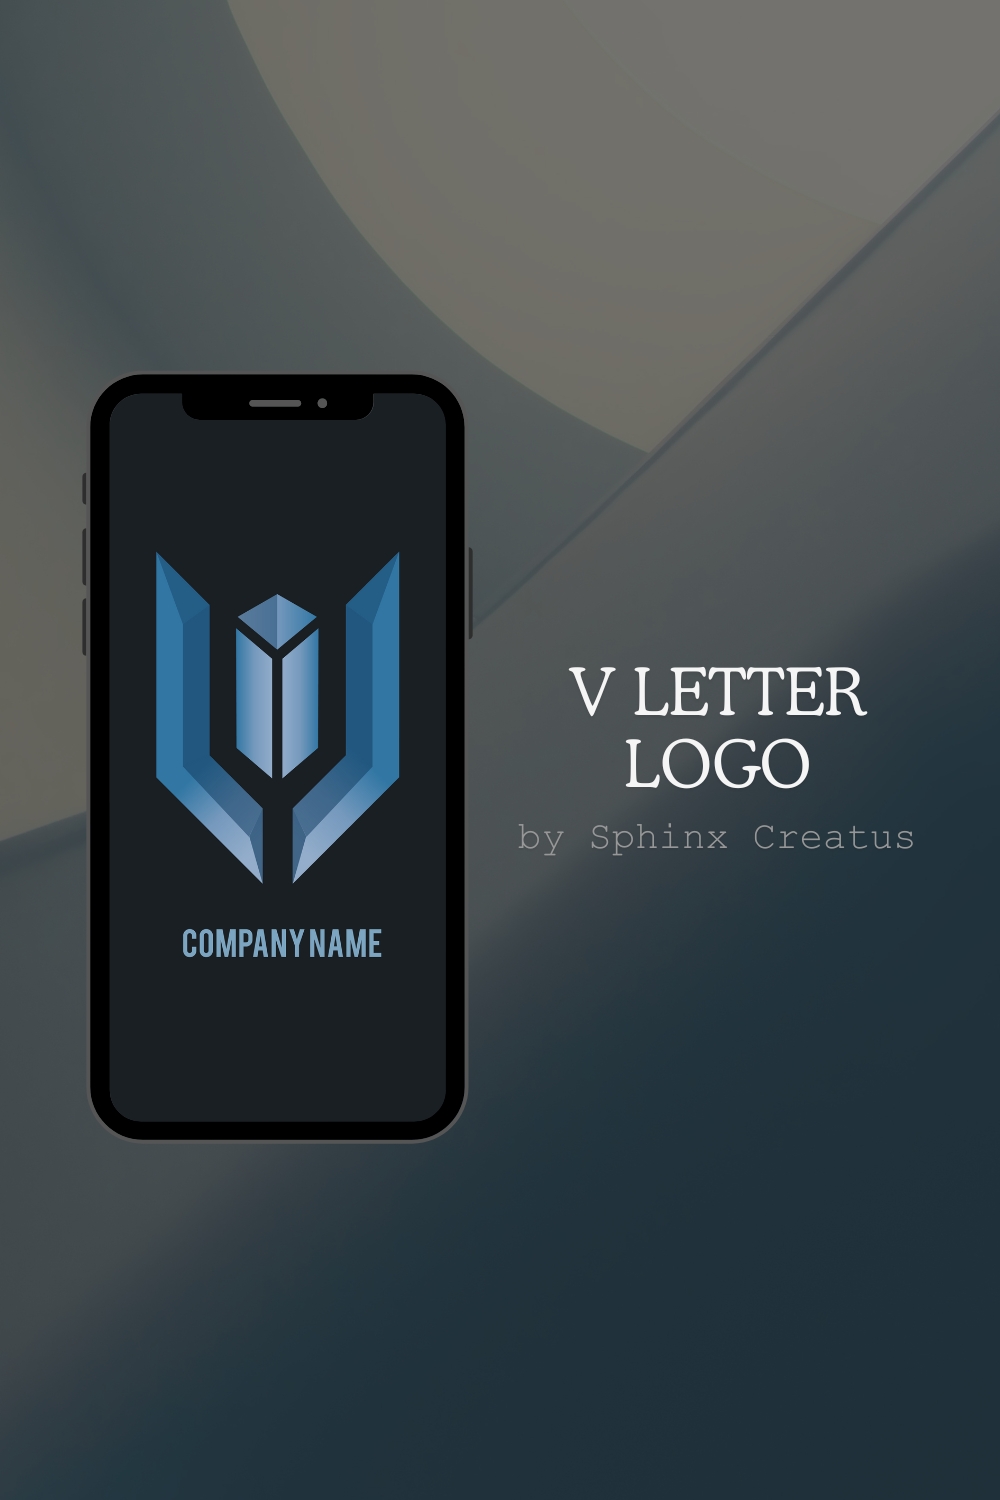 V Letter Logo [Sphinx Creatus] pinterest preview image.